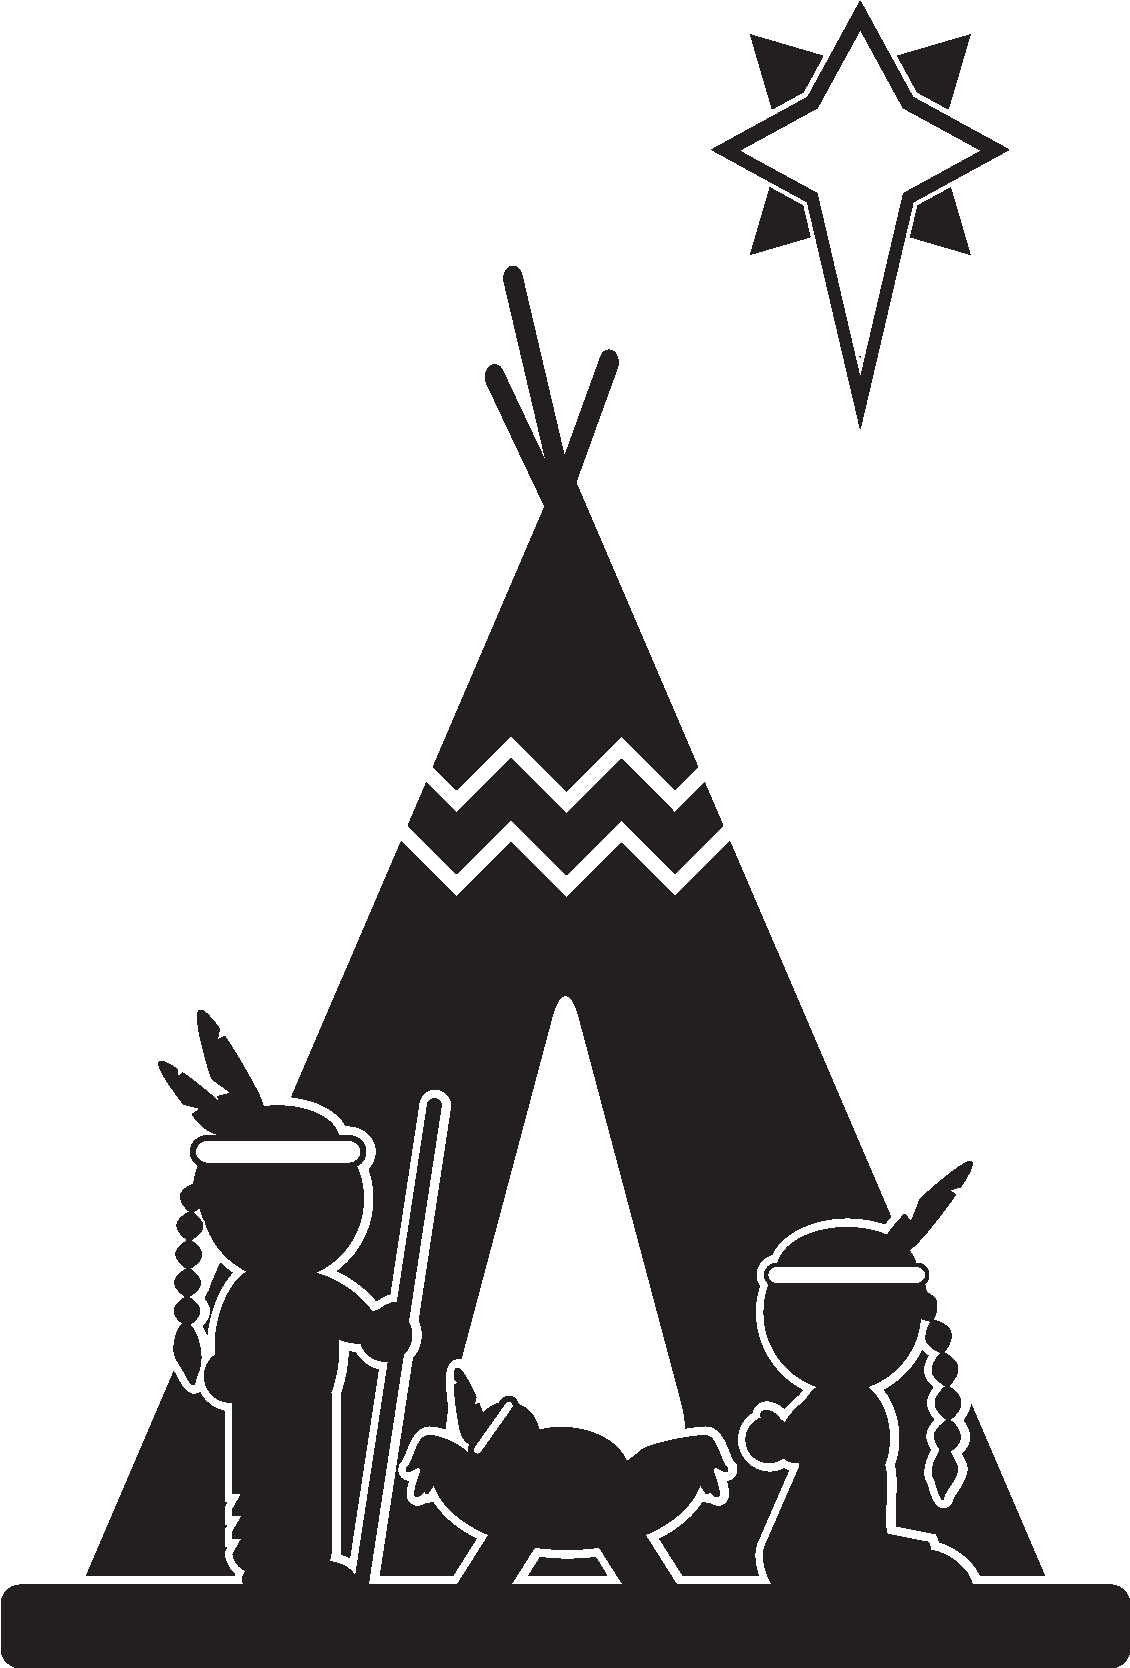 Native American Nativity - Native American Nativity (1875x1875)